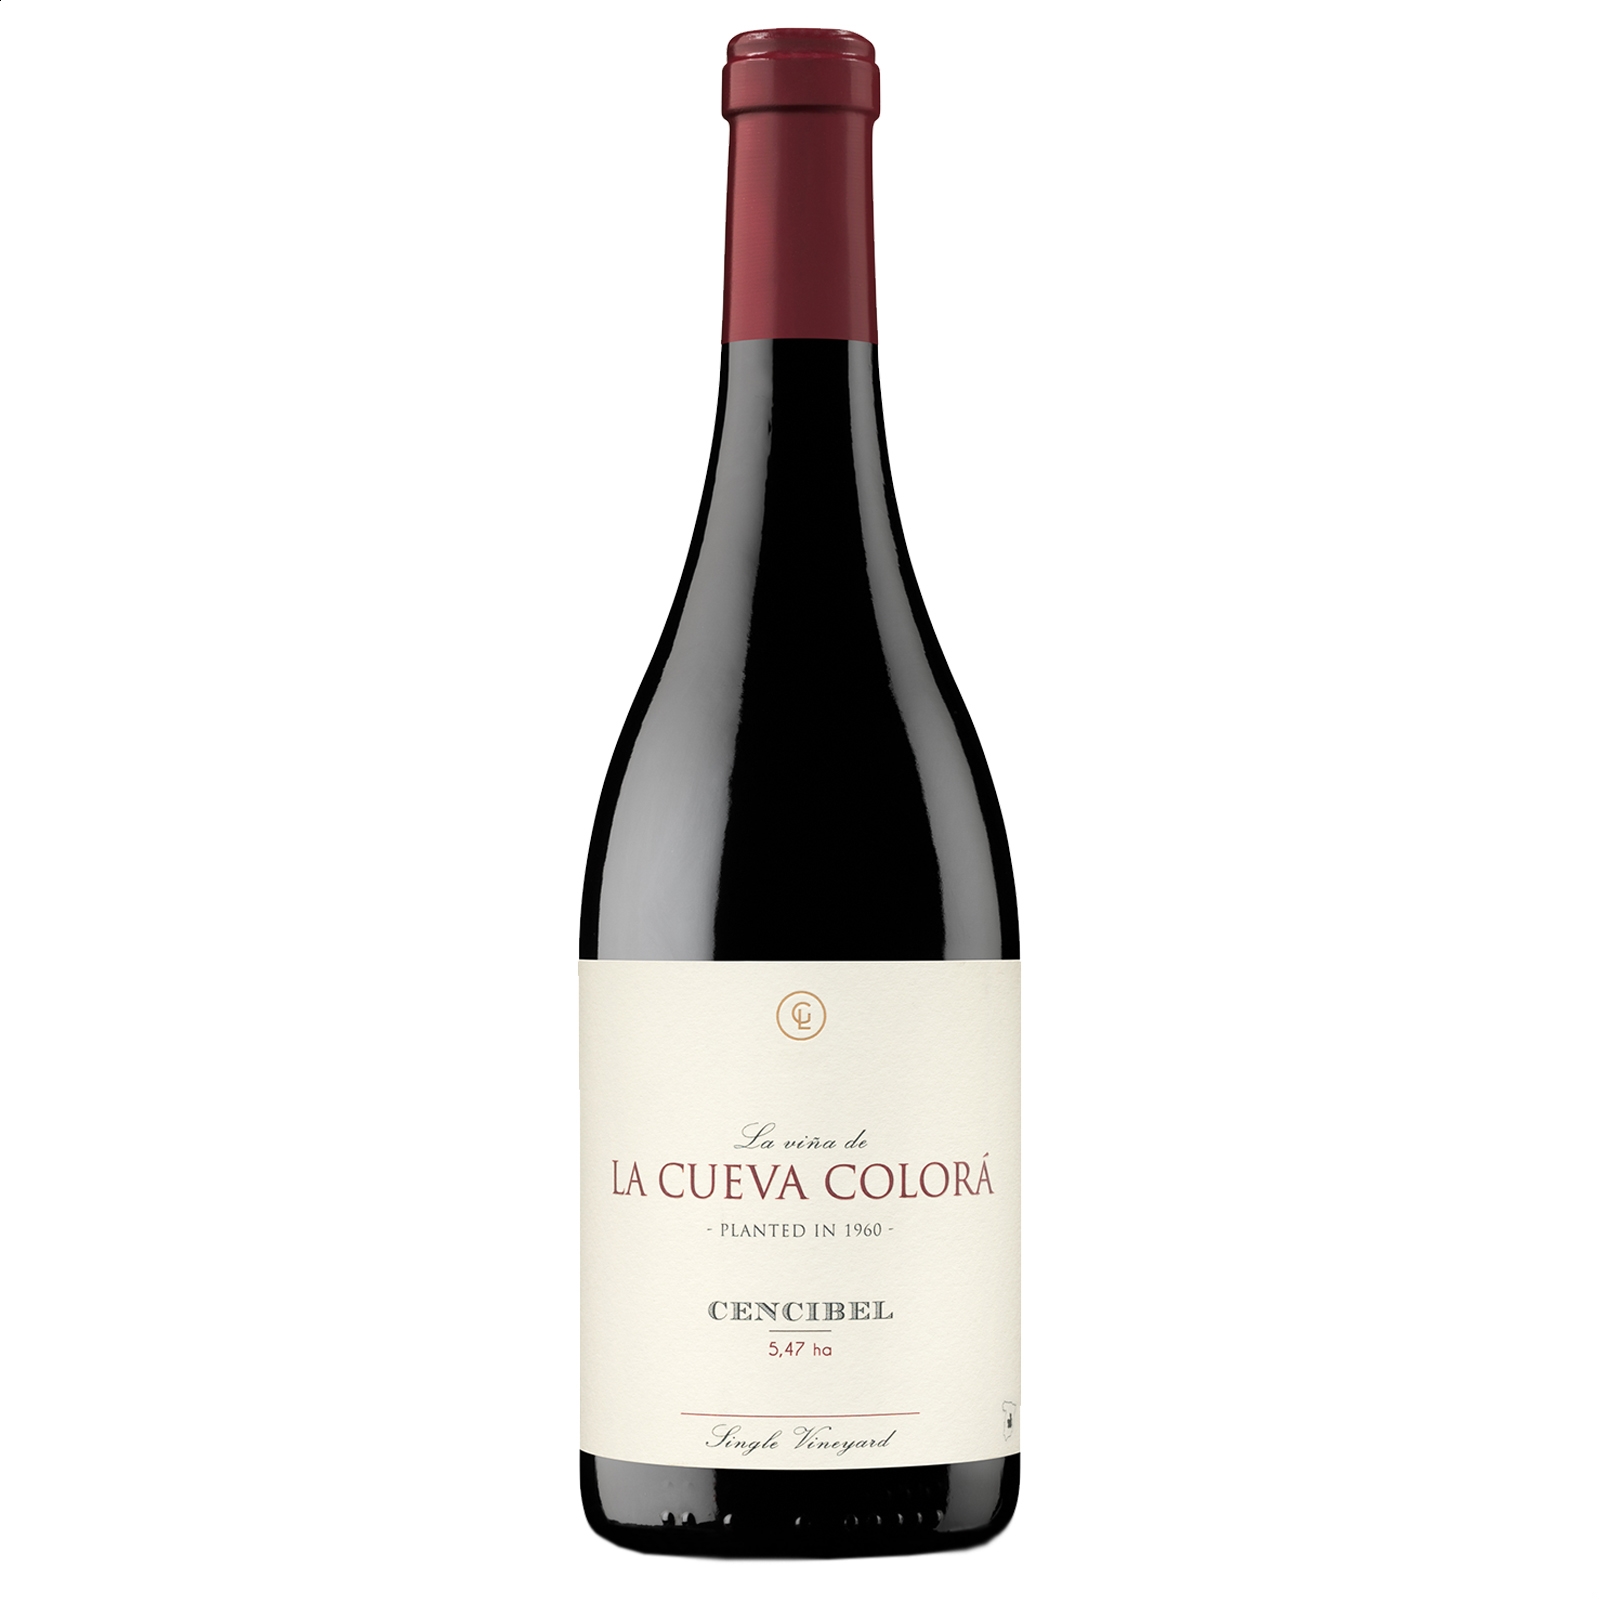 La Viña de la Cueva Colorá - Vino tinto Roble IGP Vino de la Tierra de Castilla 75cl, 6uds